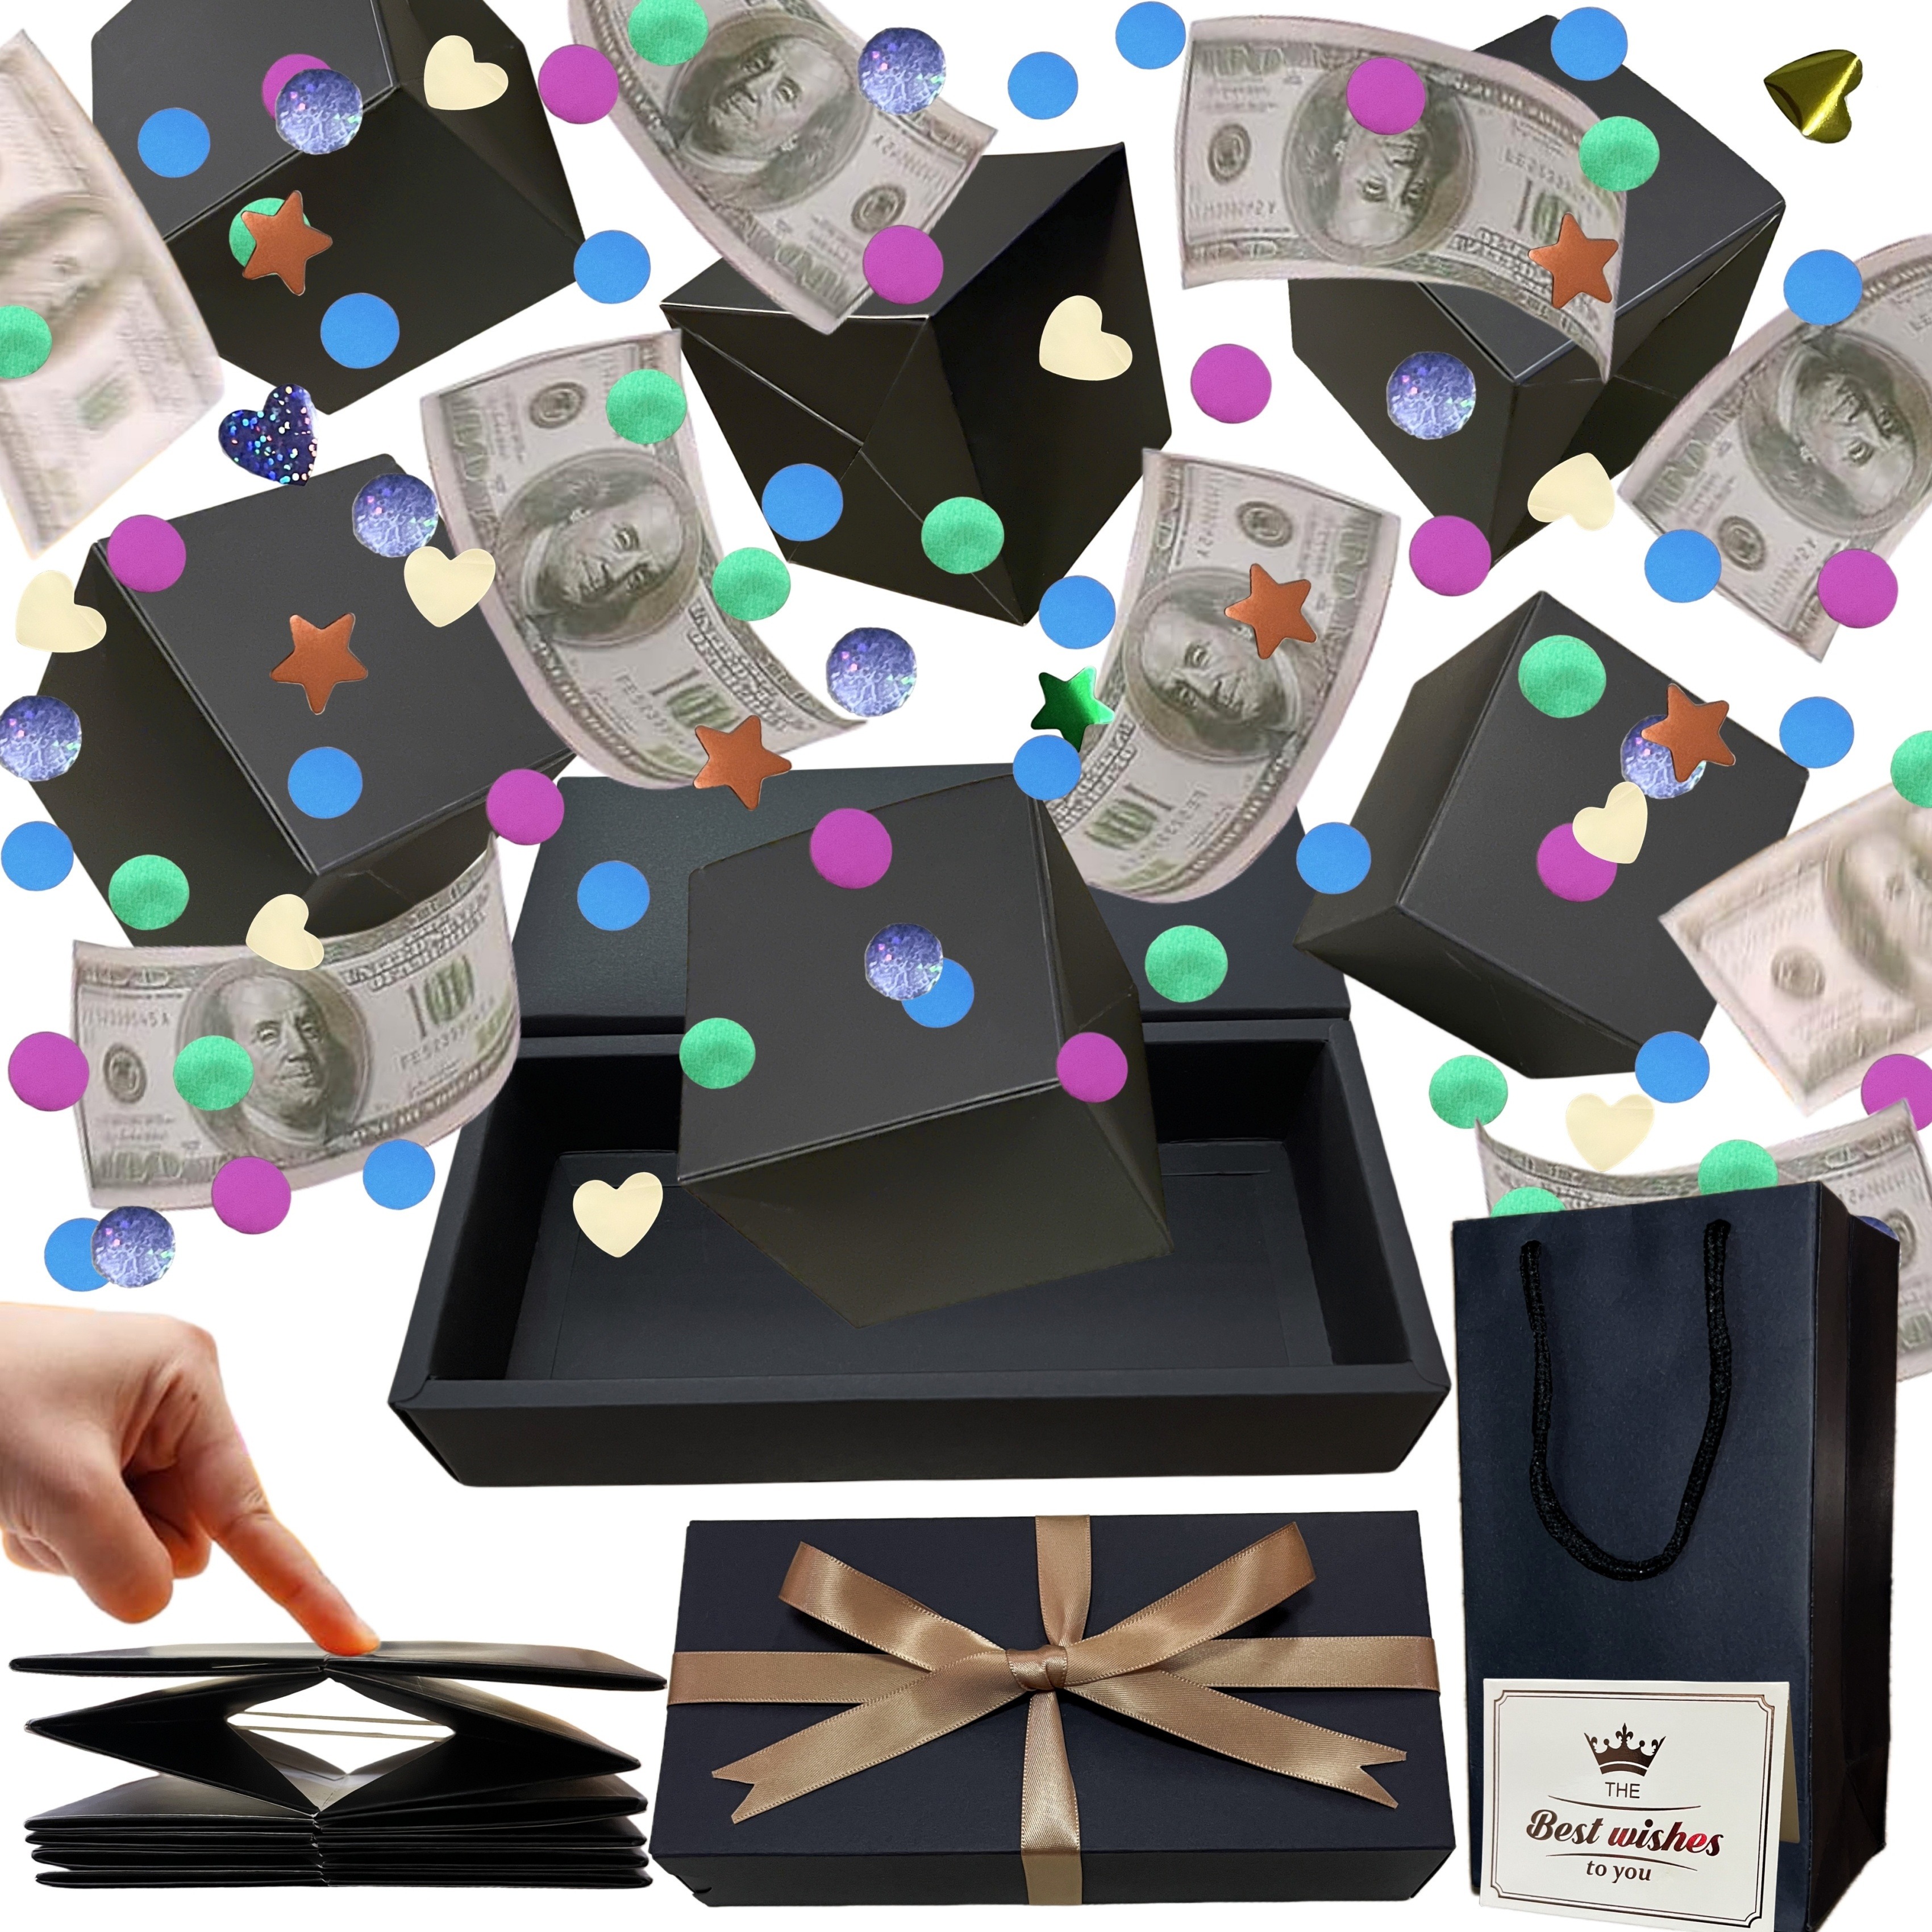 Caja de dinero para regalo en efectivo, caja de regalo para ideas de regalo  en efectivo, caja de amor con kit de extracción de dinero y cadena de luz